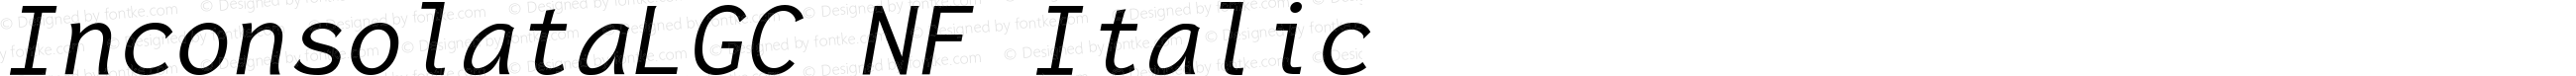 Inconsolata LGC Italic Nerd Font Complete Mono Windows Compatible